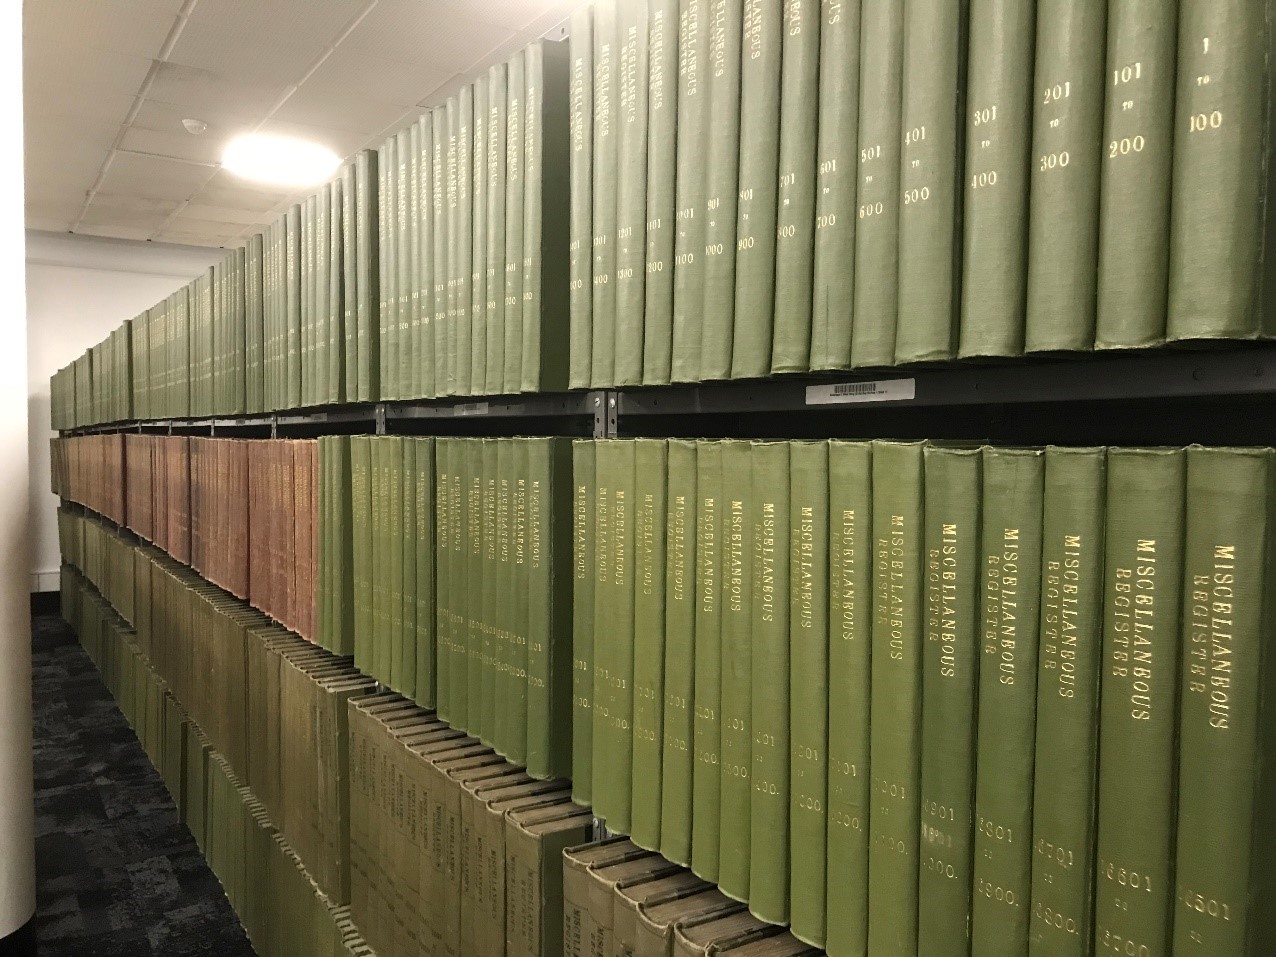 Shelves full of miscellaneous registers books